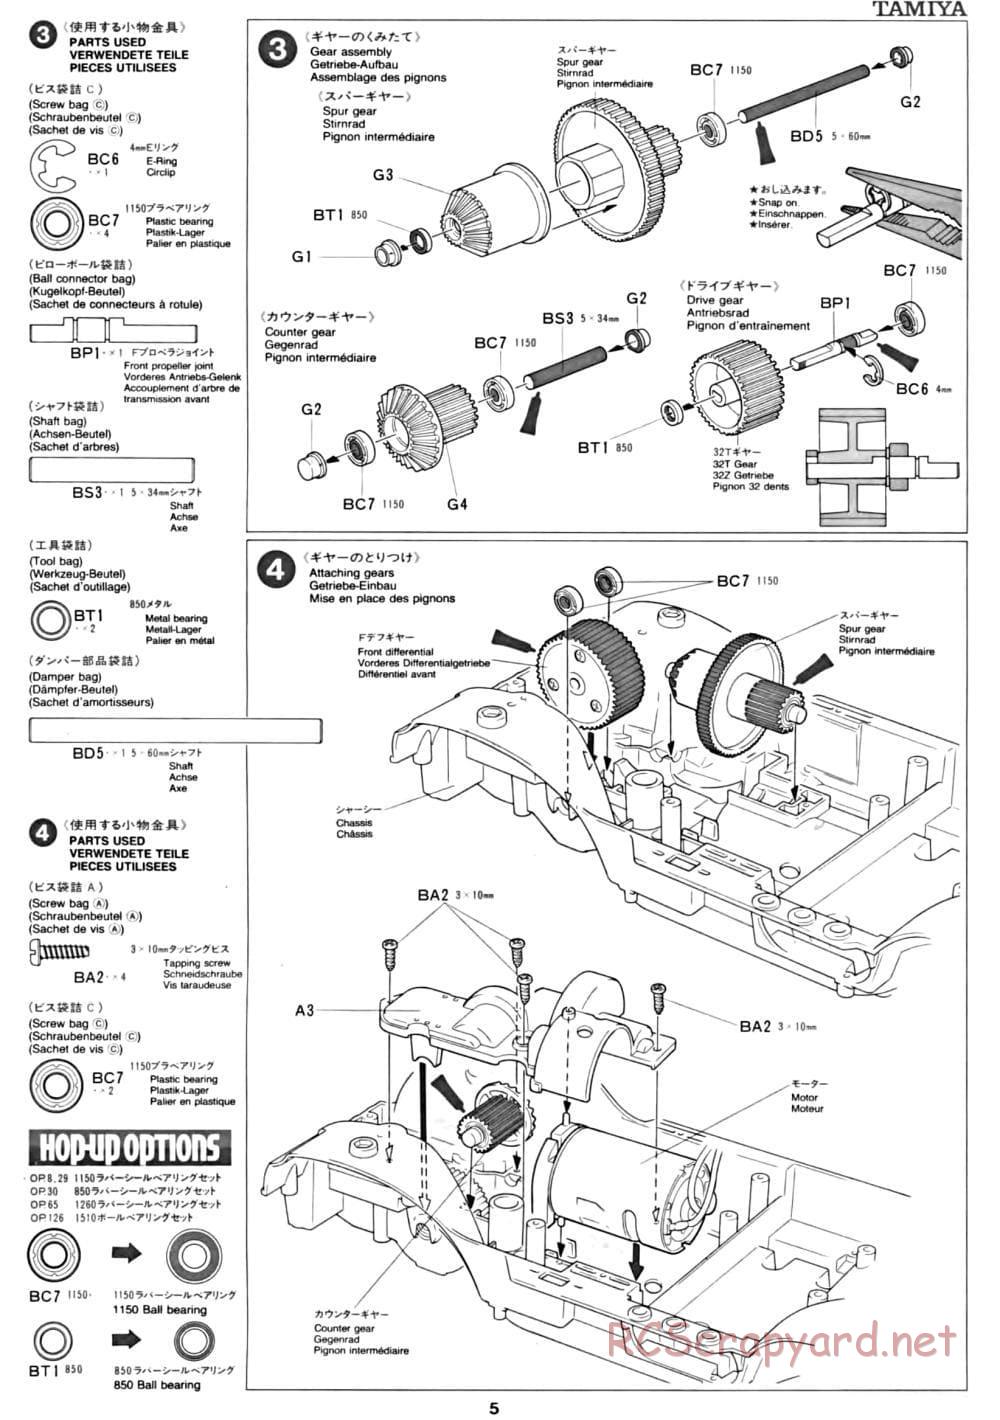 Tamiya - CC-01 Chassis - Manual - Page 5